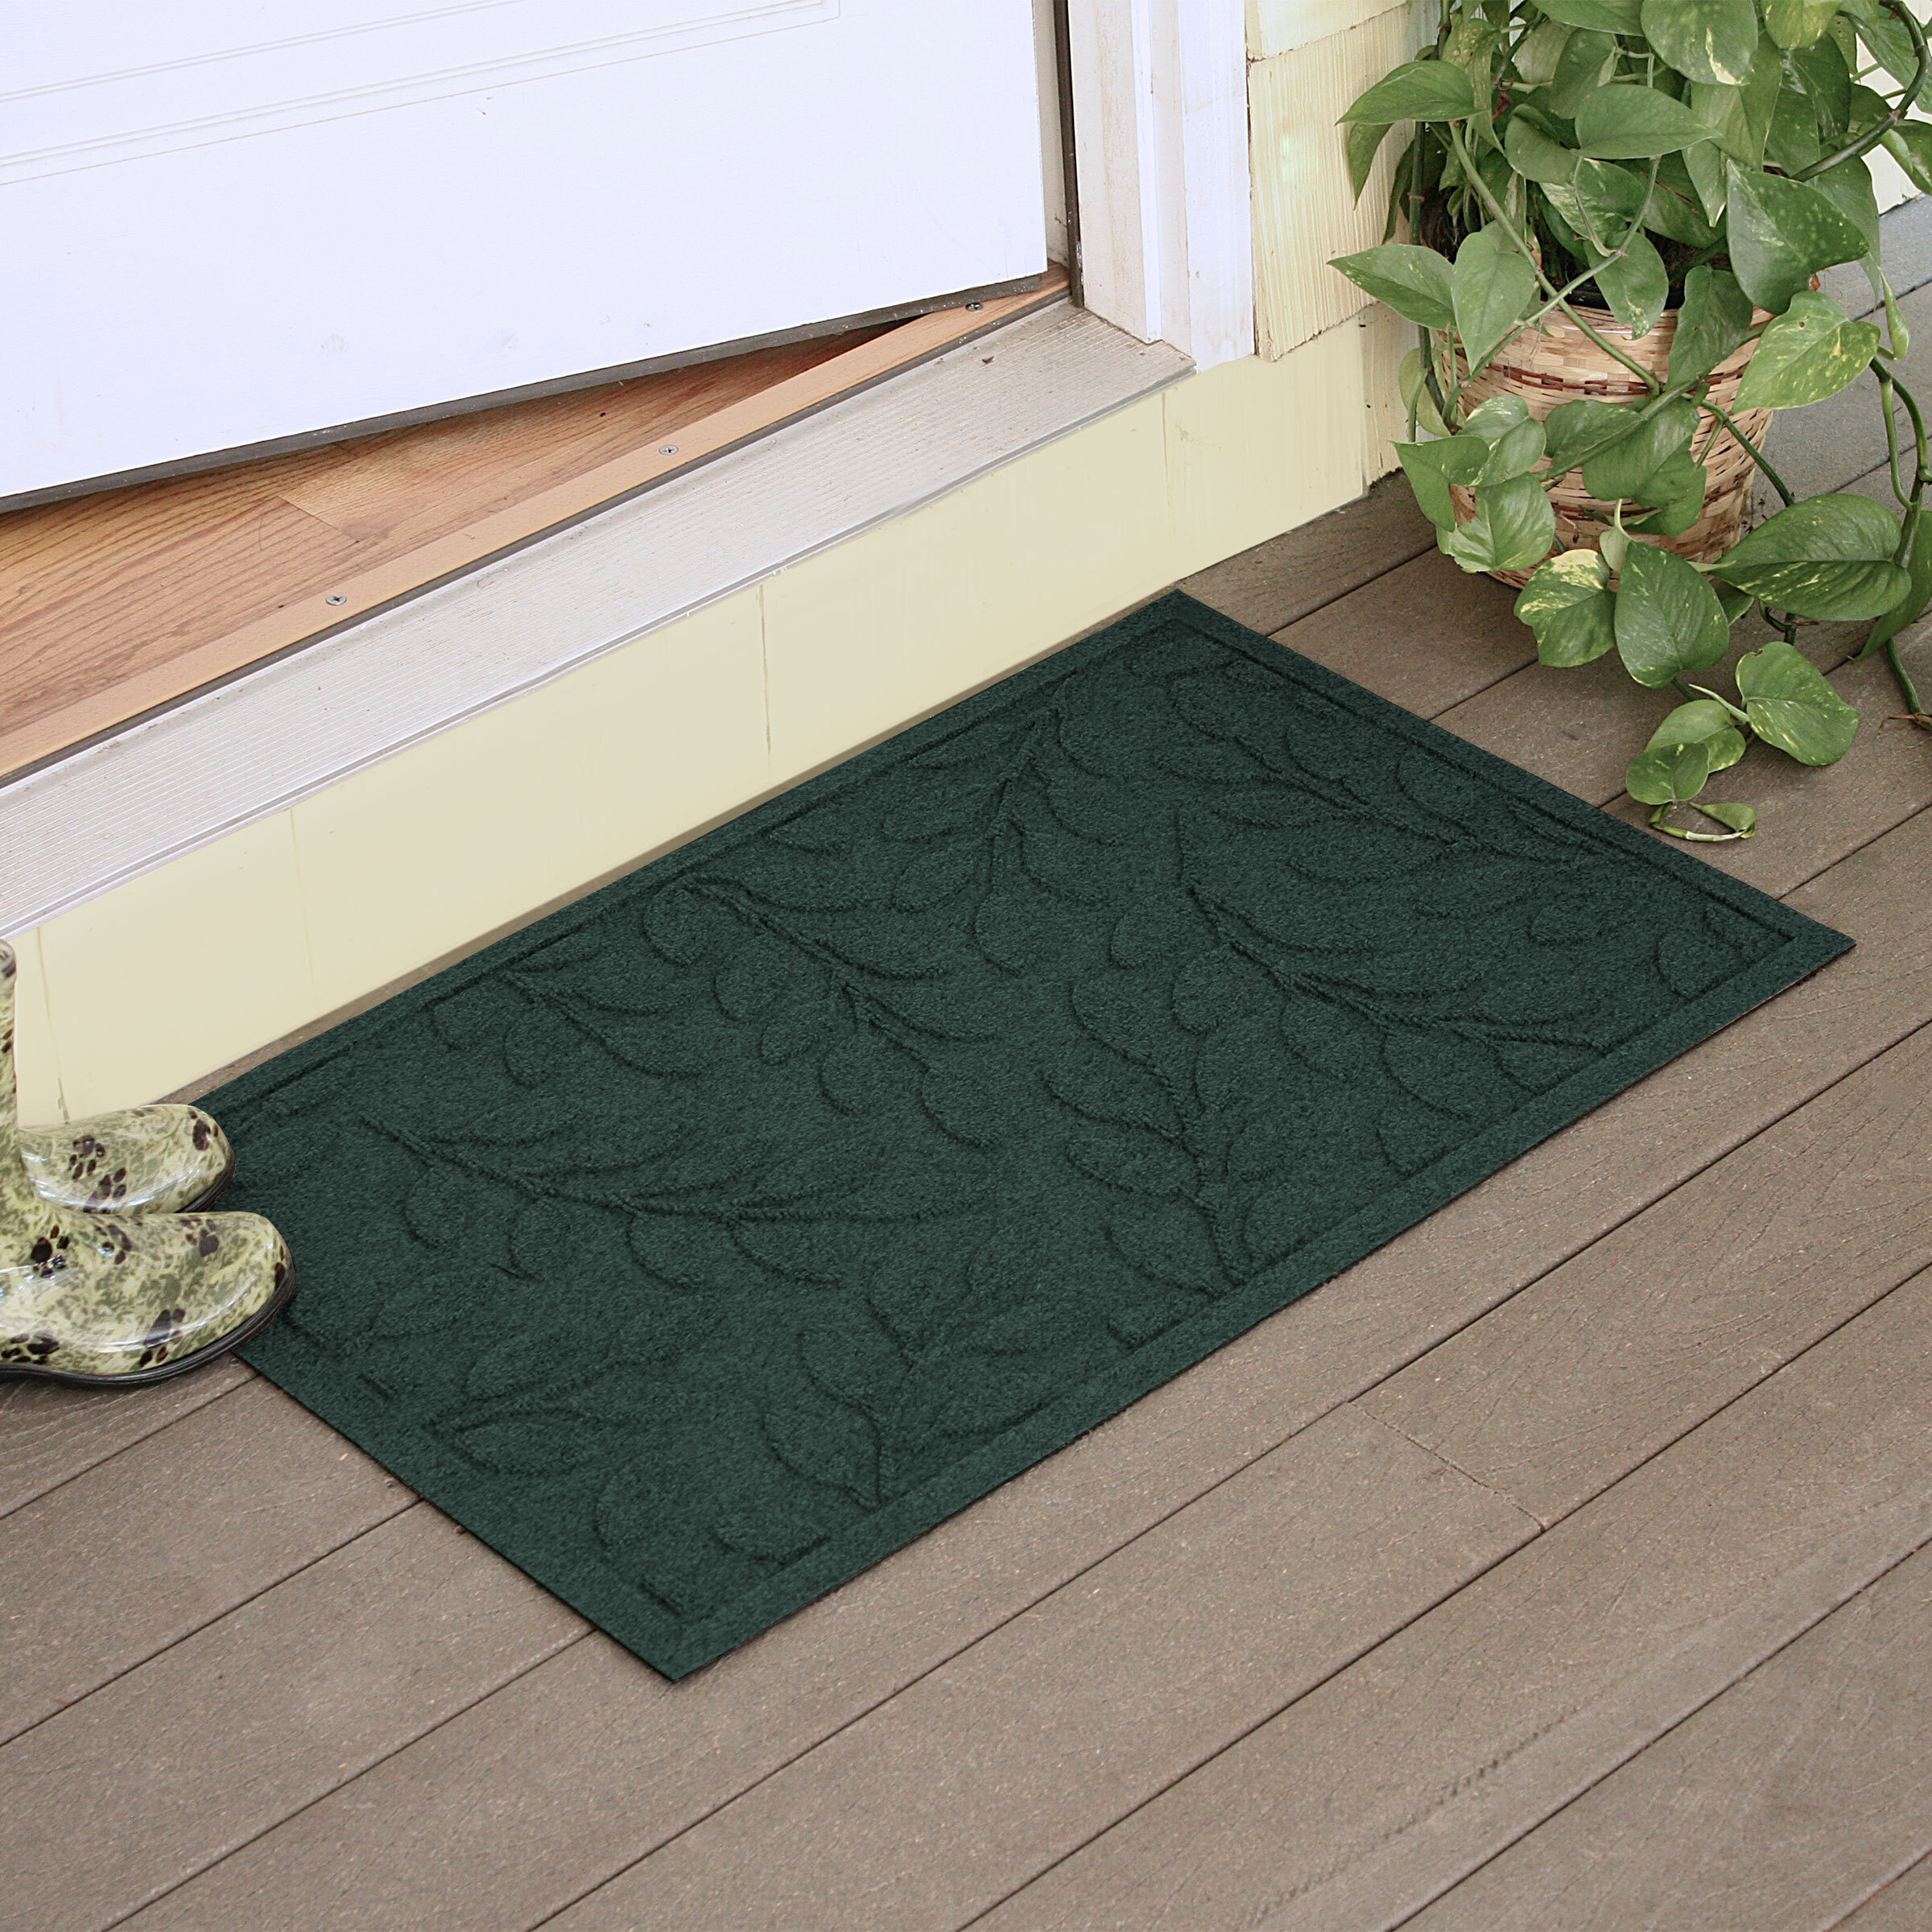 Original Indoor Doormat, Monstera Leaves Door Mats Indoor Rug, 24x36 inch Machine Washable Low-Profile Inside Door Mat for Entryway, Green